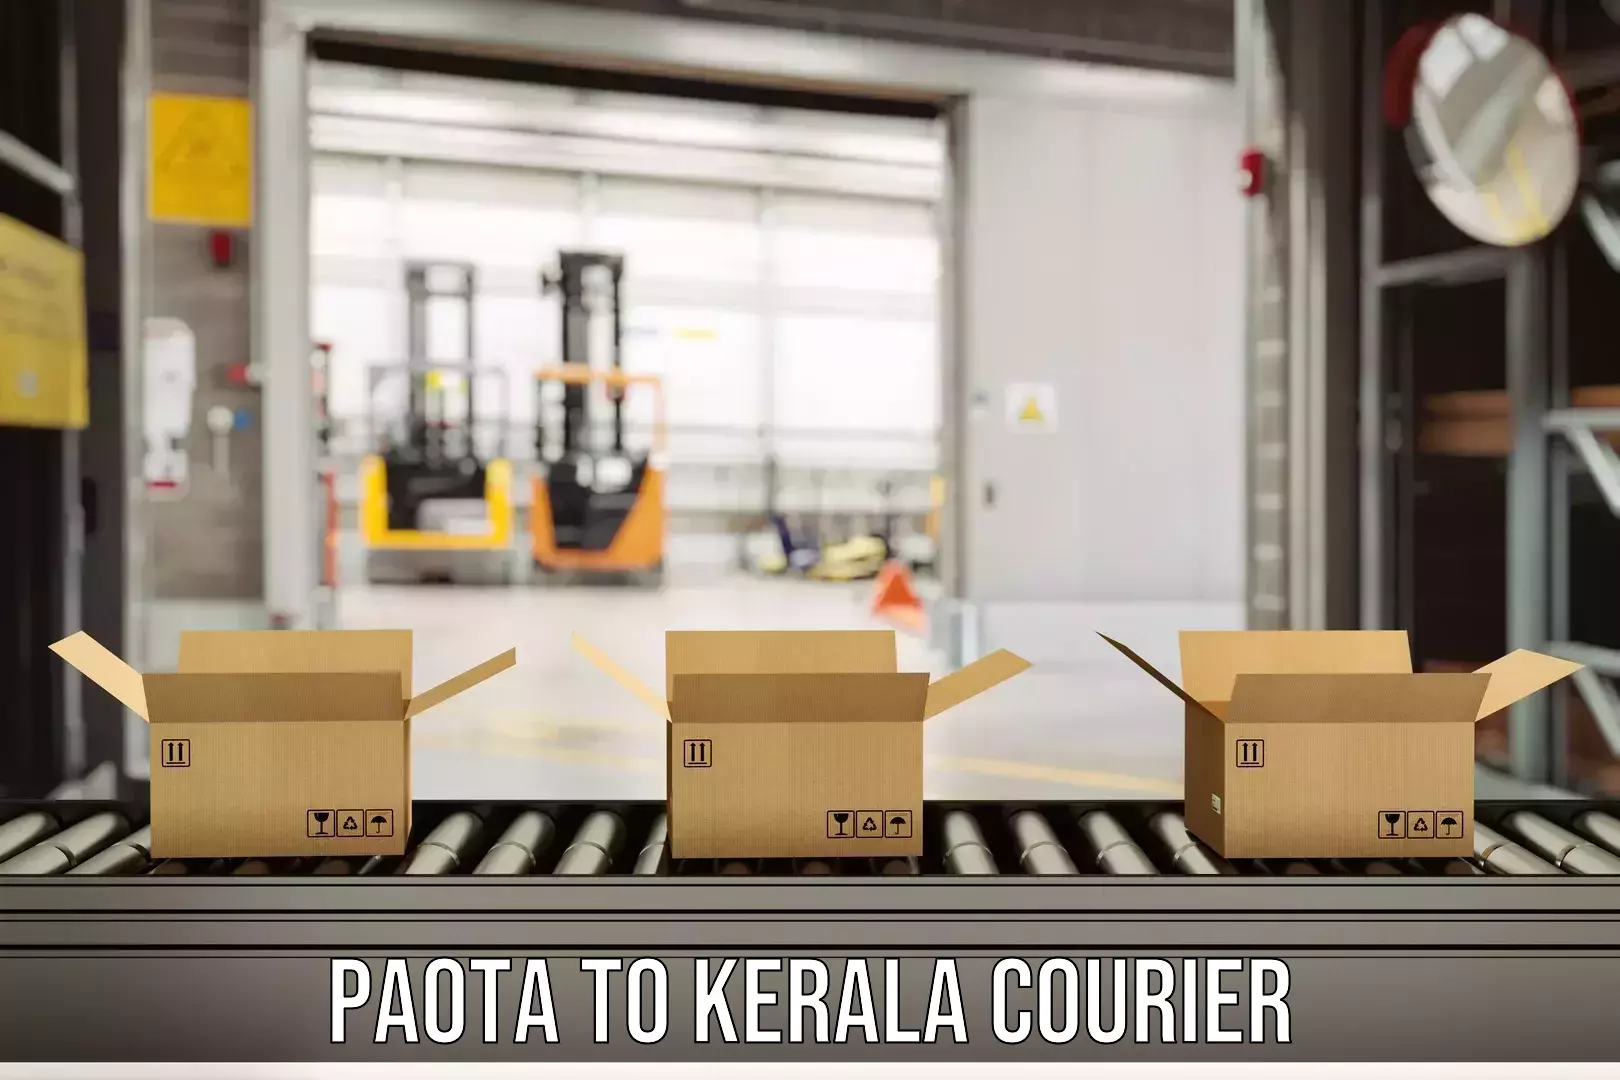 Innovative shipping solutions Paota to Kerala